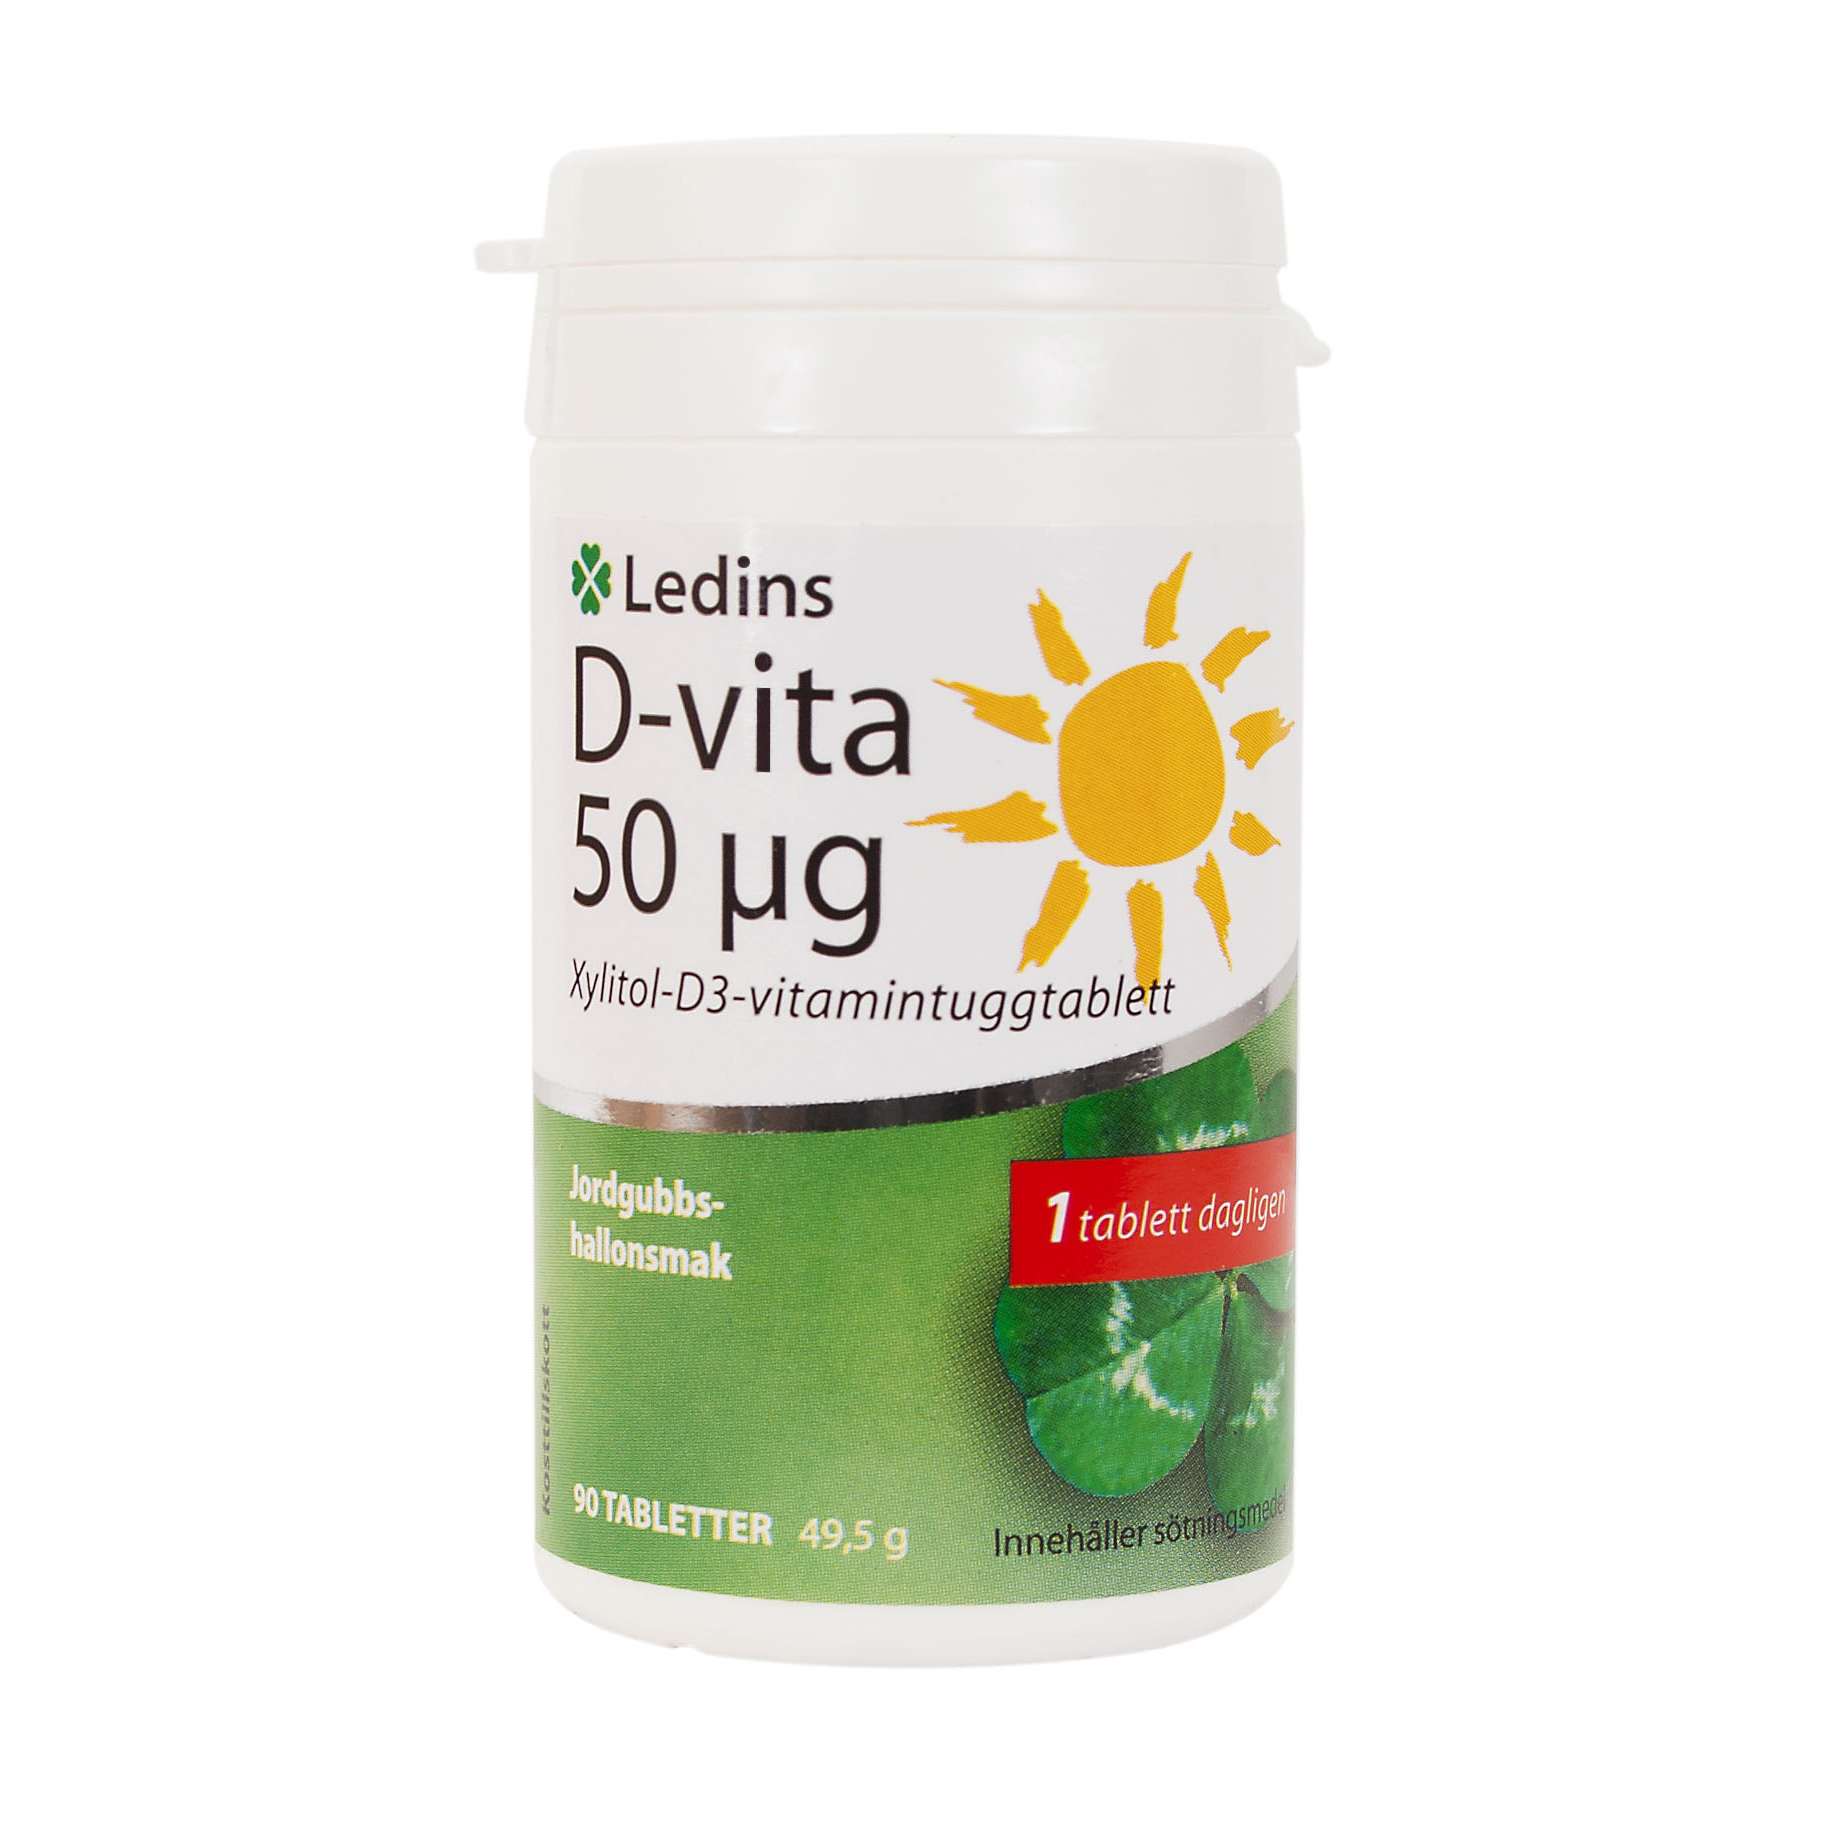 Ledins D-Vitamin 50ug 90 tuggtabletter